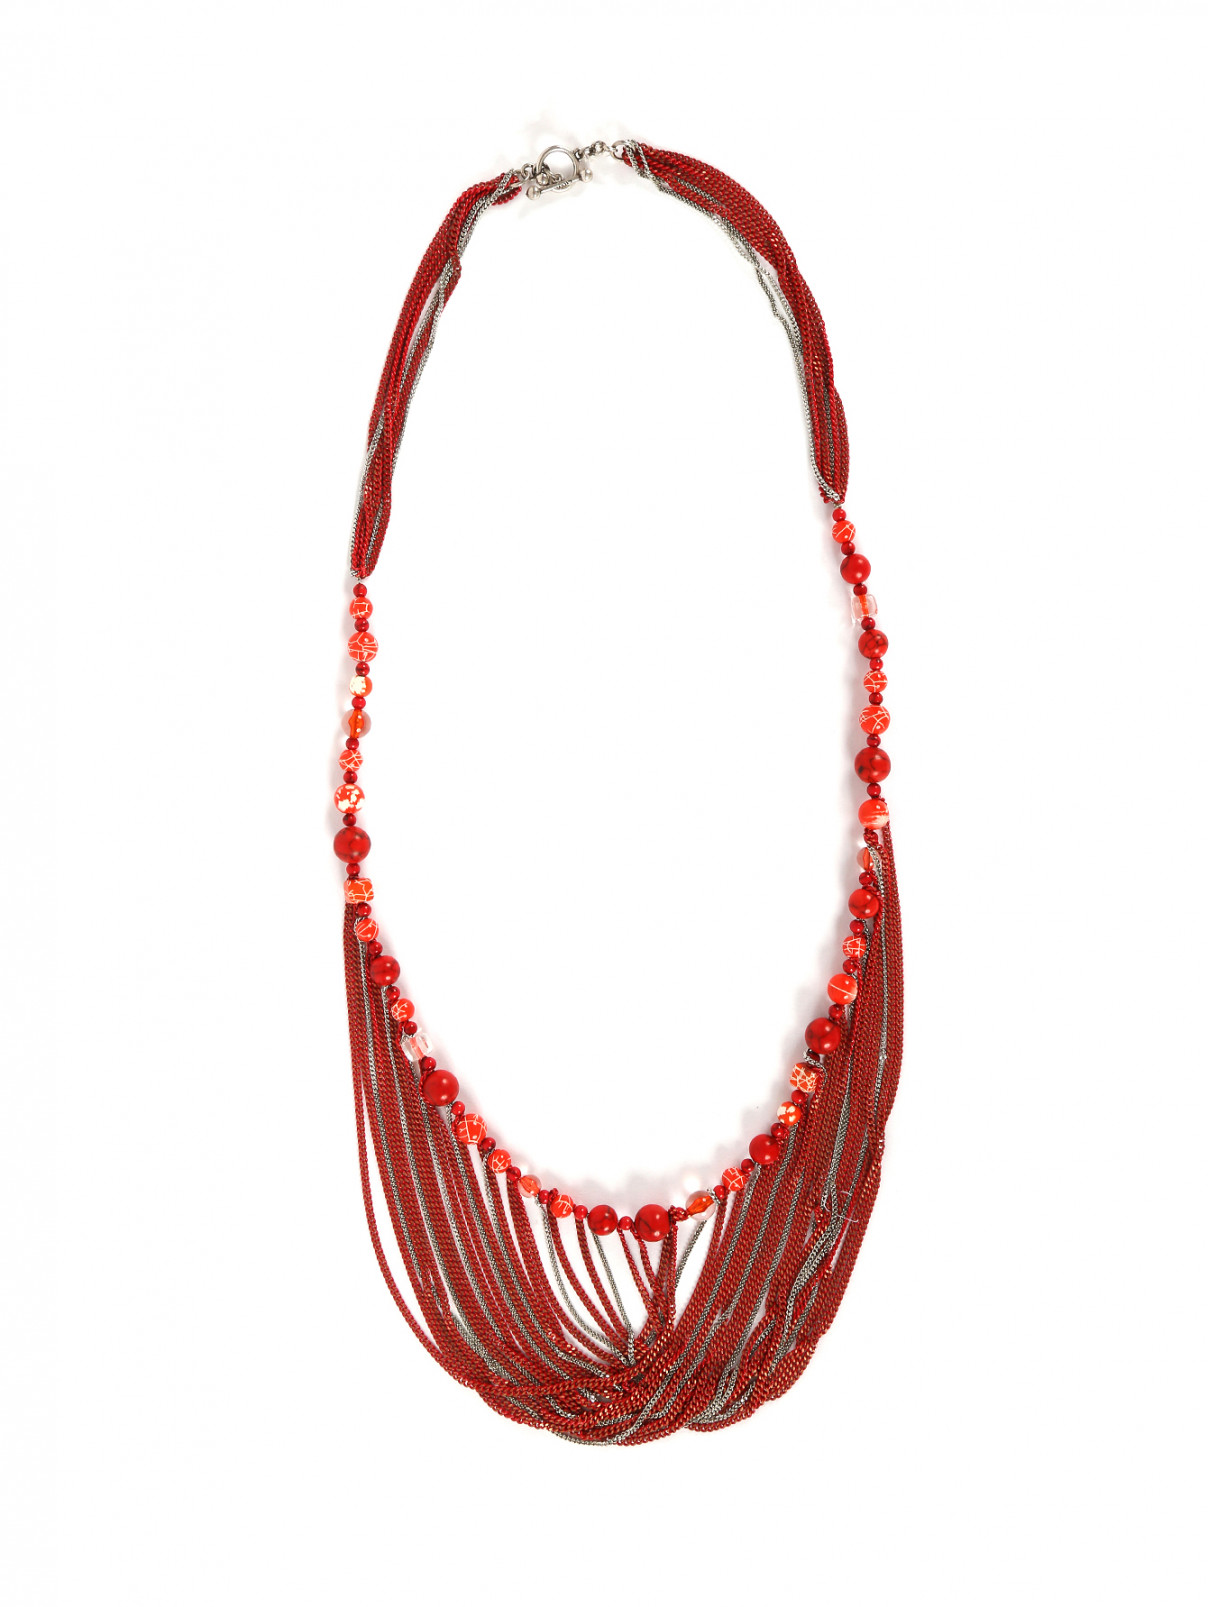 Ожерелье из бусин и металлических цепочек Jean Paul Gaultier  –  Общий вид  – Цвет:  Красный